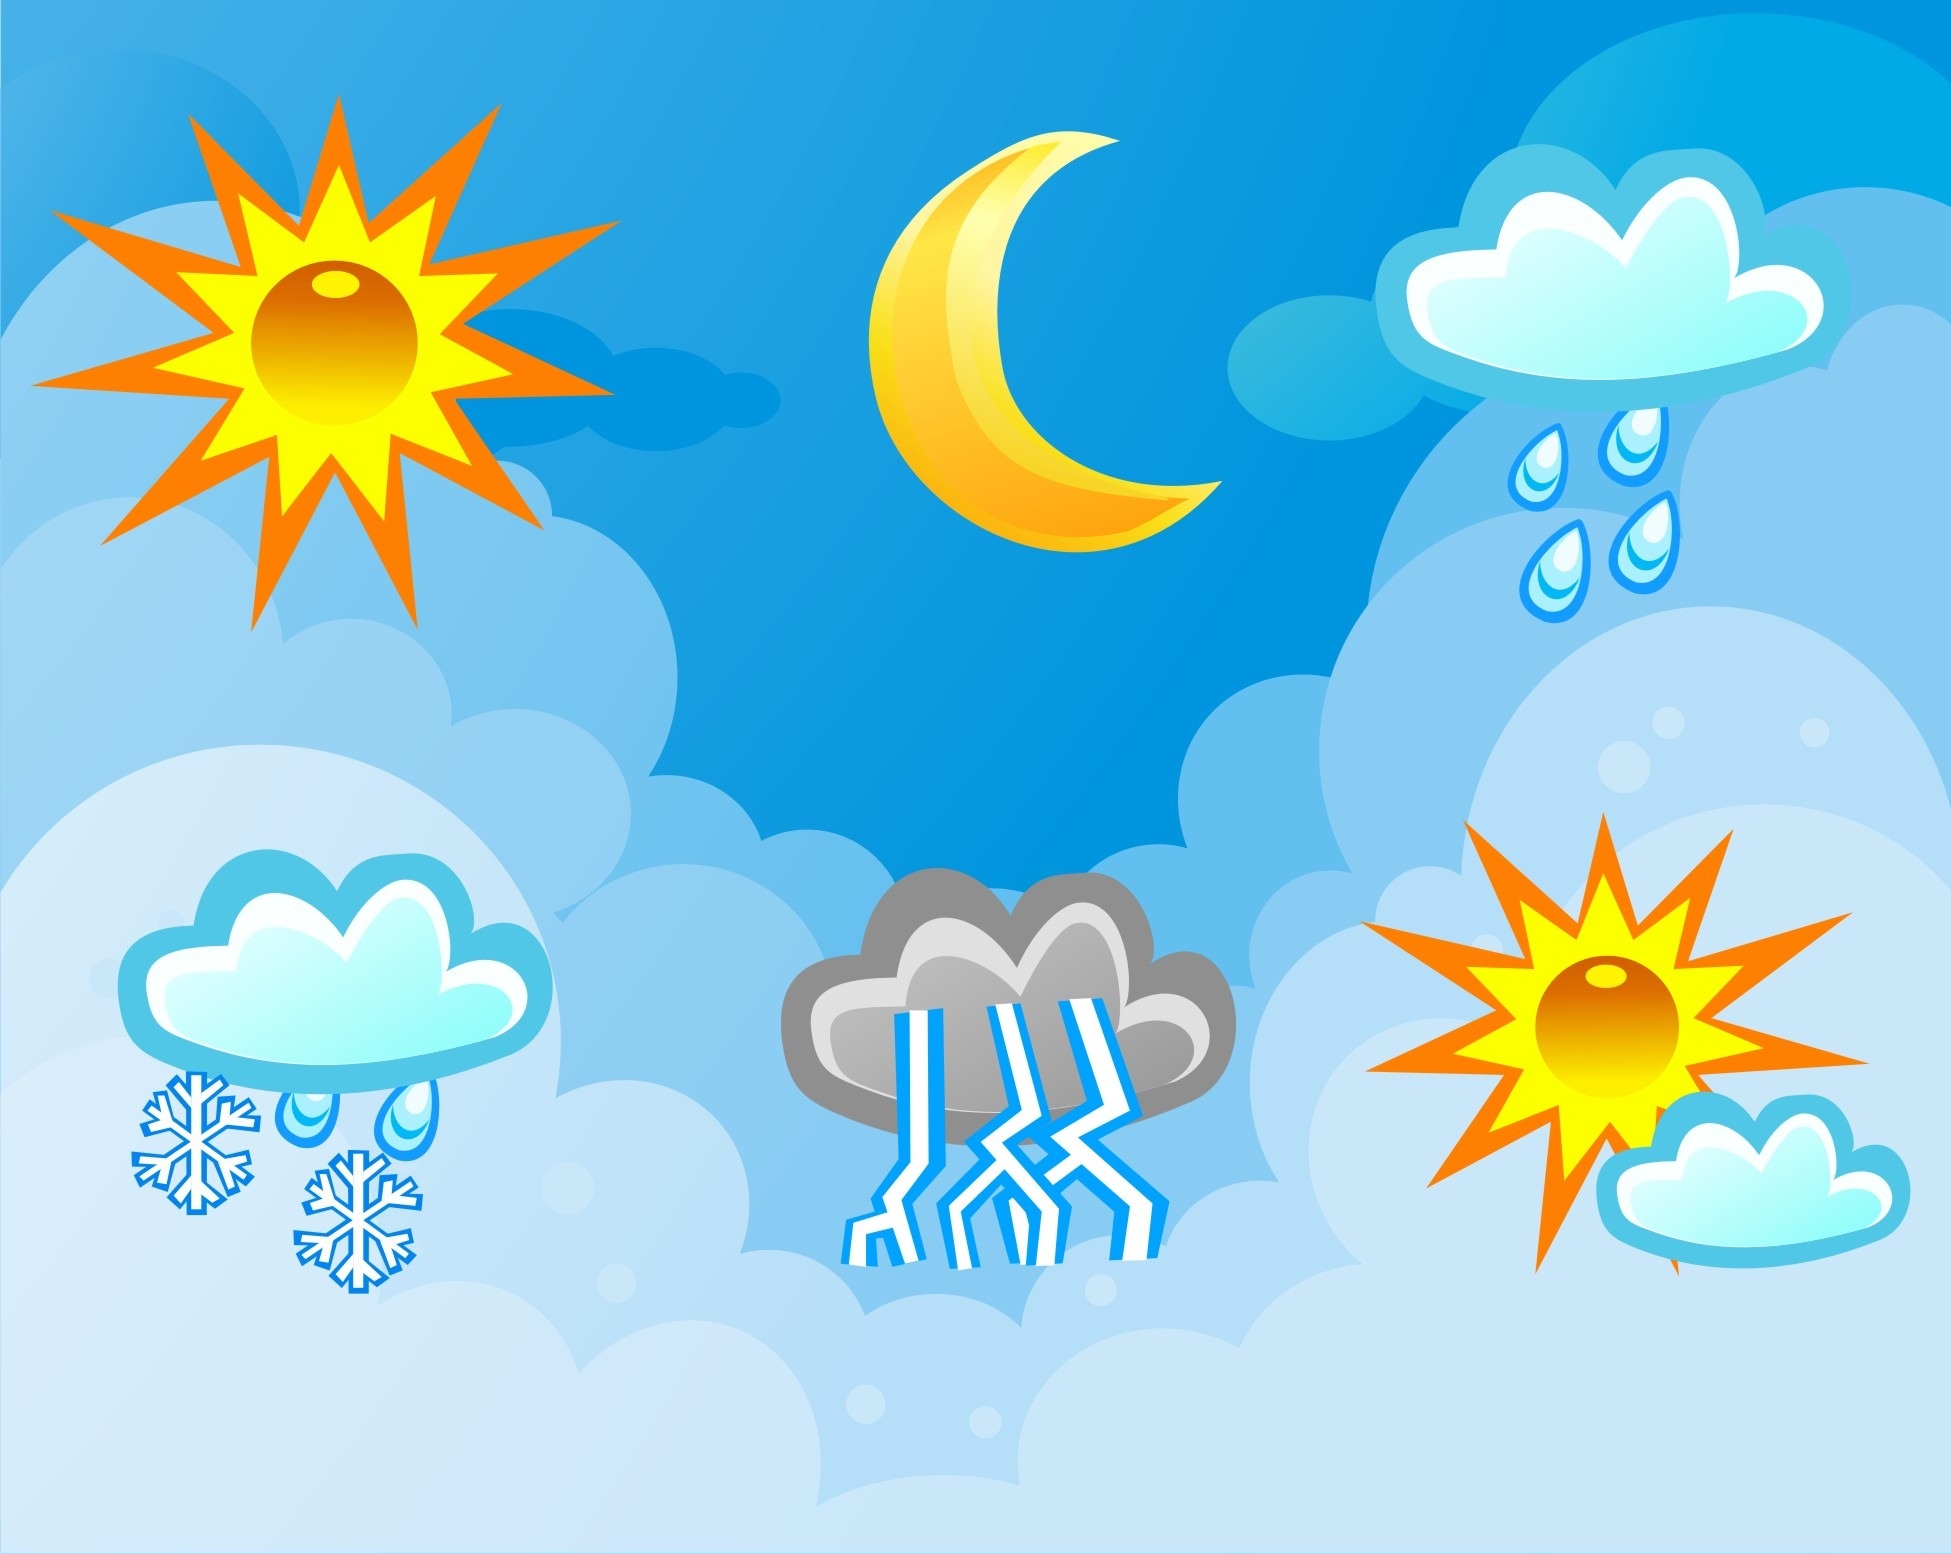 Https прогноз погоды. Погода. Погода рисунок. Картинка прогноза погоды. Погода картинки для детей.